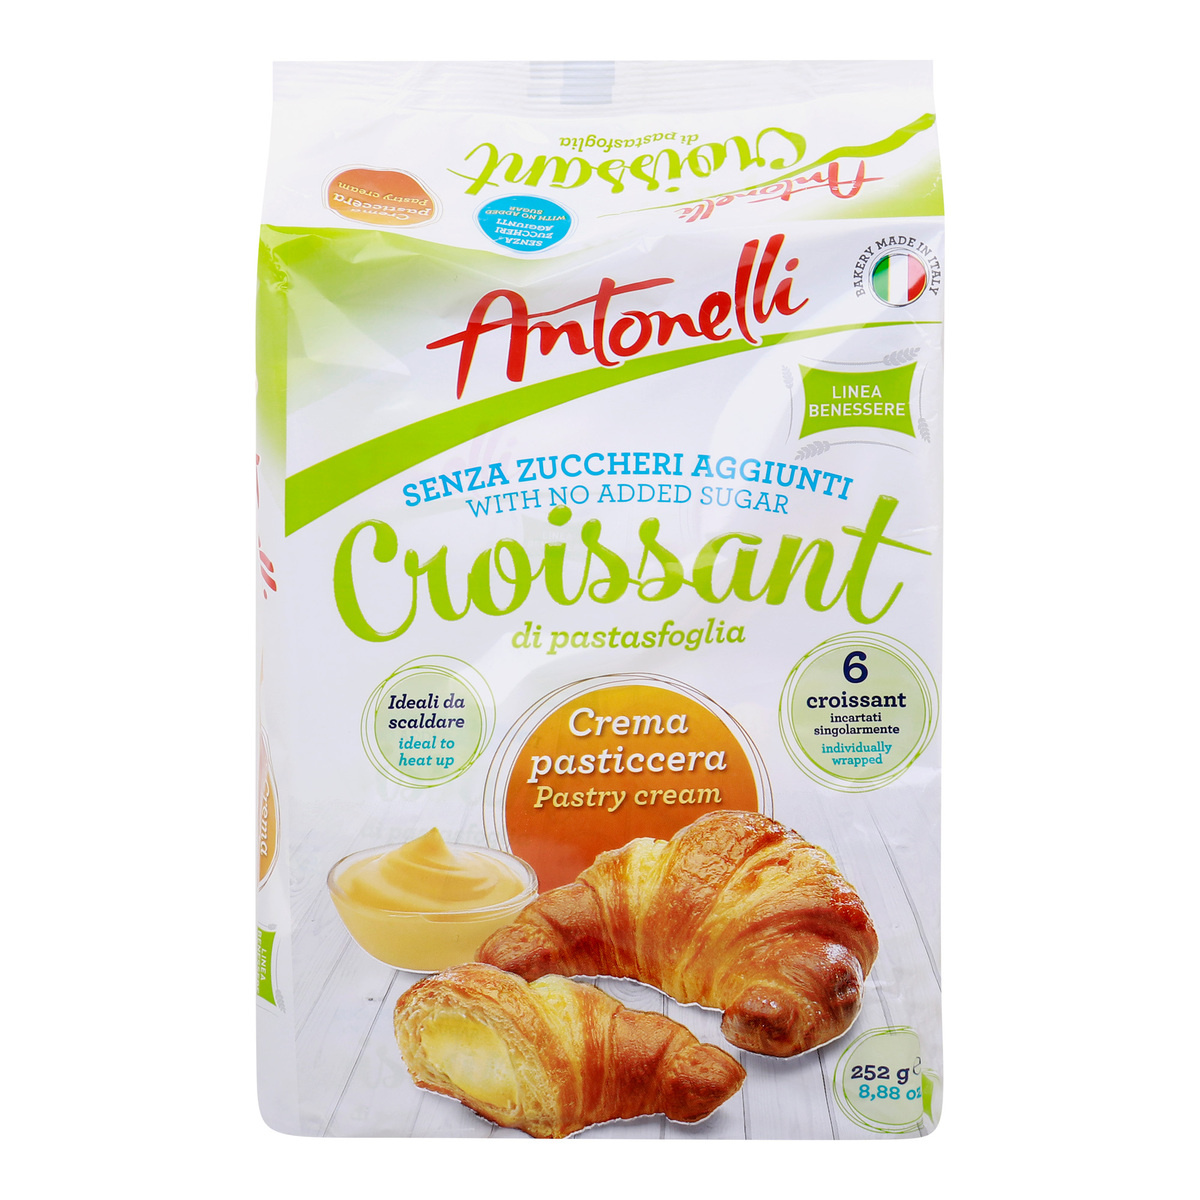 Antonelli Sugar Free Custard Cream Croissant, 252 g Online at Best Price, Brought In Cakes